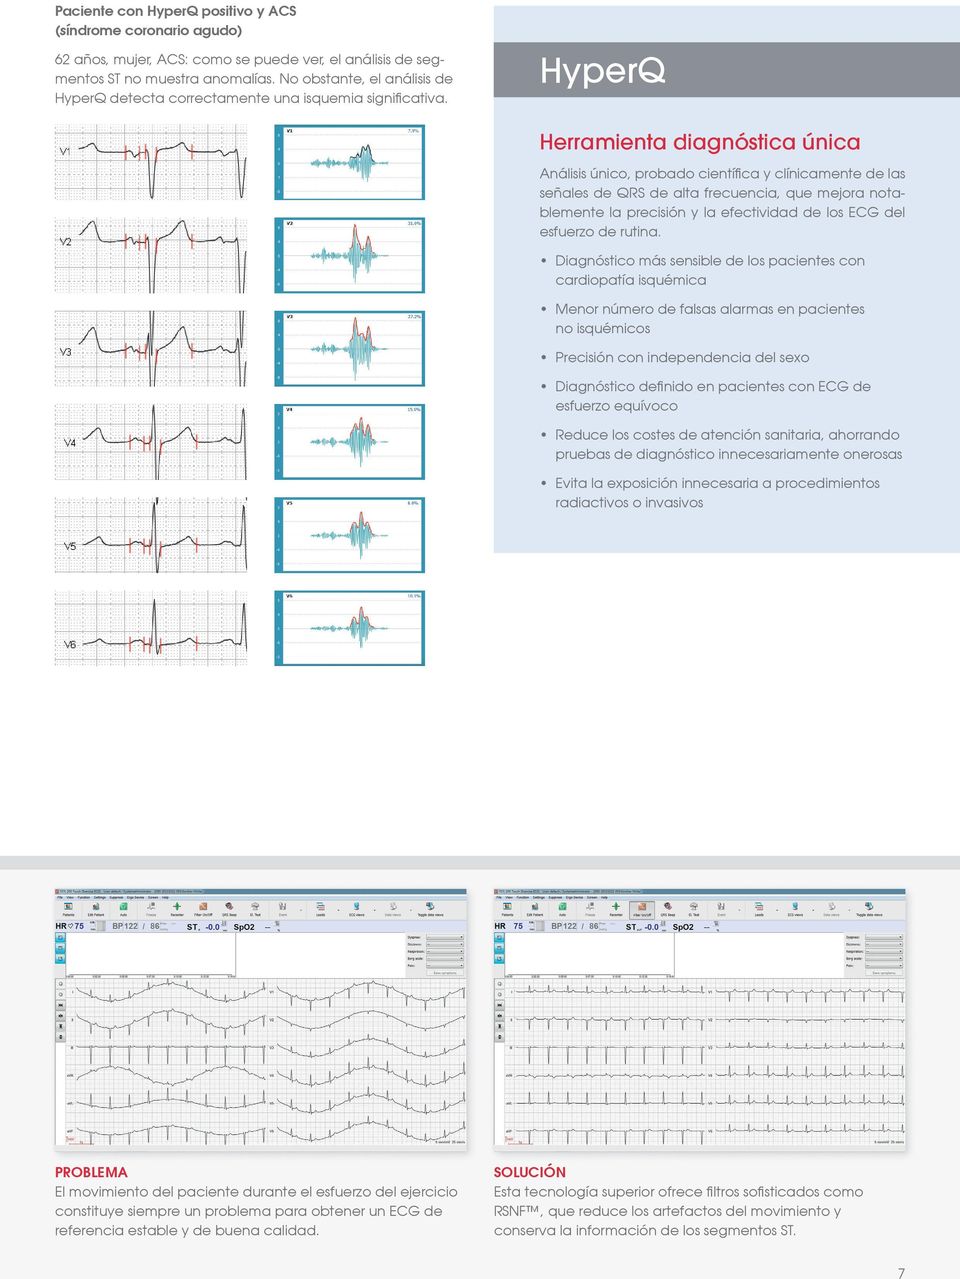 HyperQ Herramienta diagnóstica única nálisis único, probado científica y clínicamente de las señales de QRS de alta frecuencia, que mejora notablemente la precisión y la efectividad de los ECG del